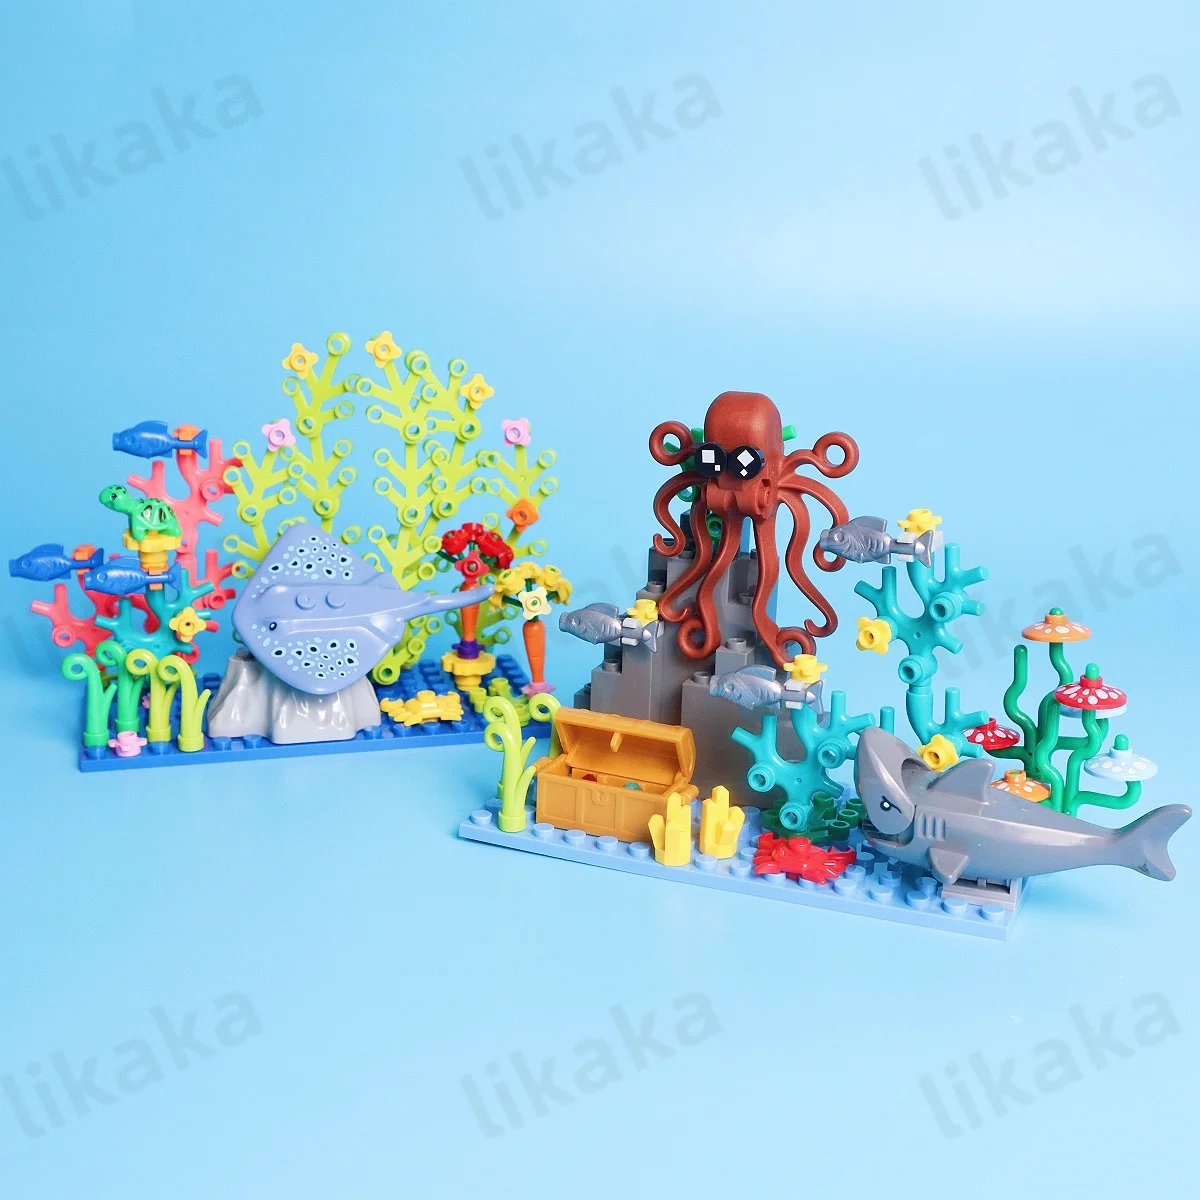 

Конструктор «Подводный мир», морские животные, игрушки, MOC, лучи, черепахи, рыба, осьминог с водой, растения, набор блоков, игрушки «сделай сам» для детей